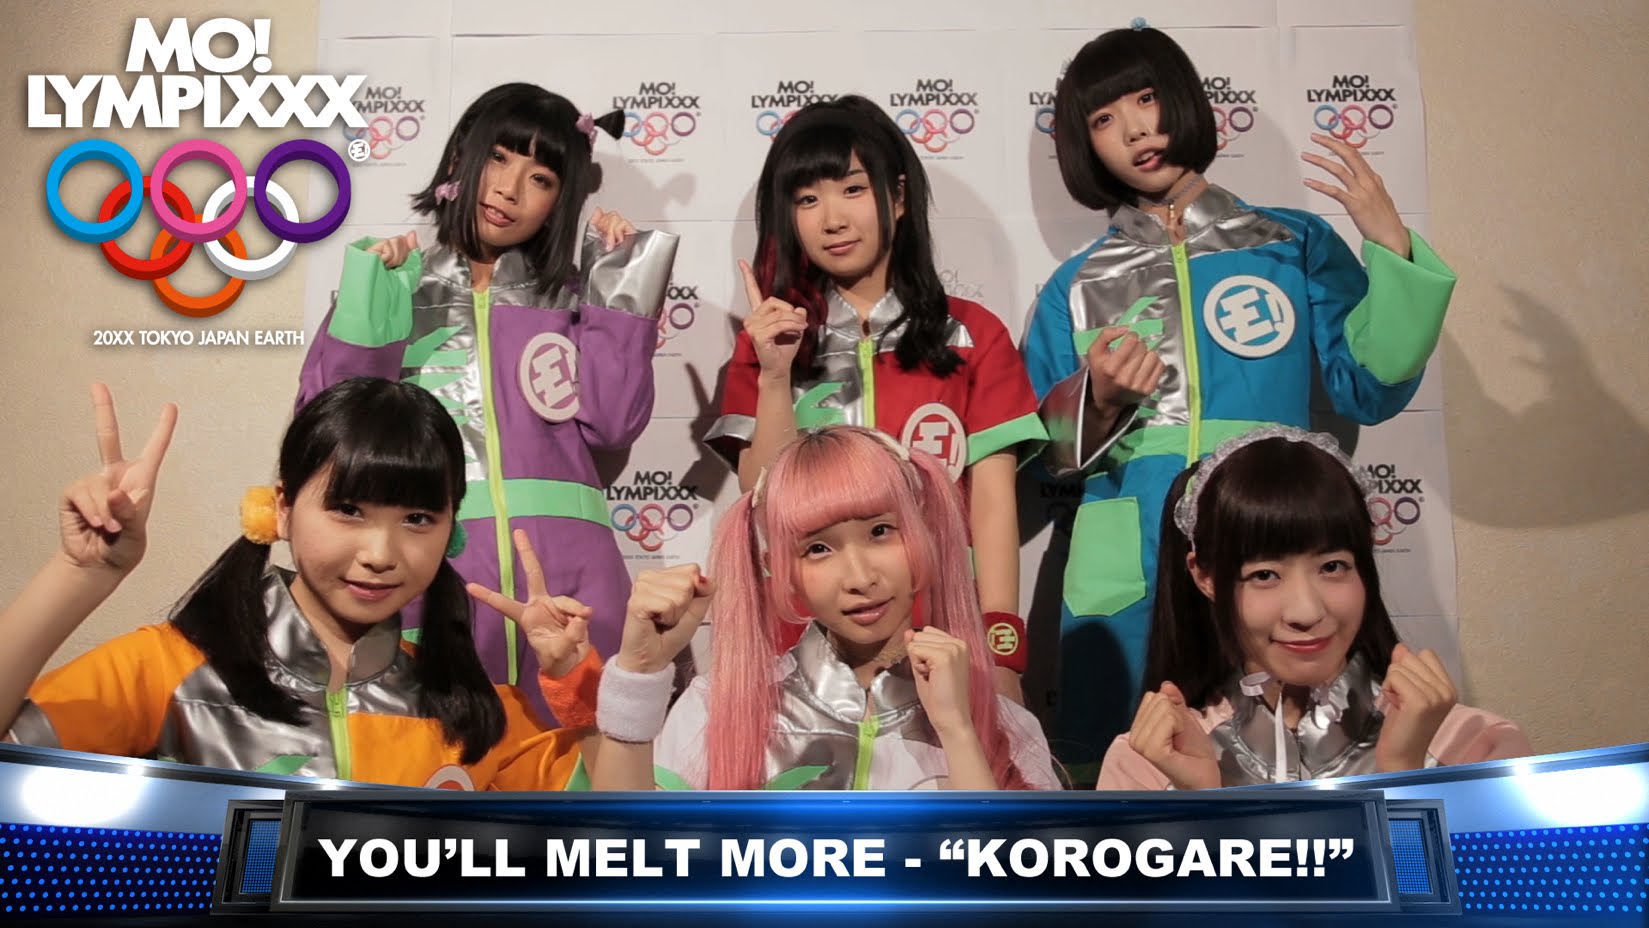 Yurumerumo! Go For The Gold in the MV for “Korogare!!”